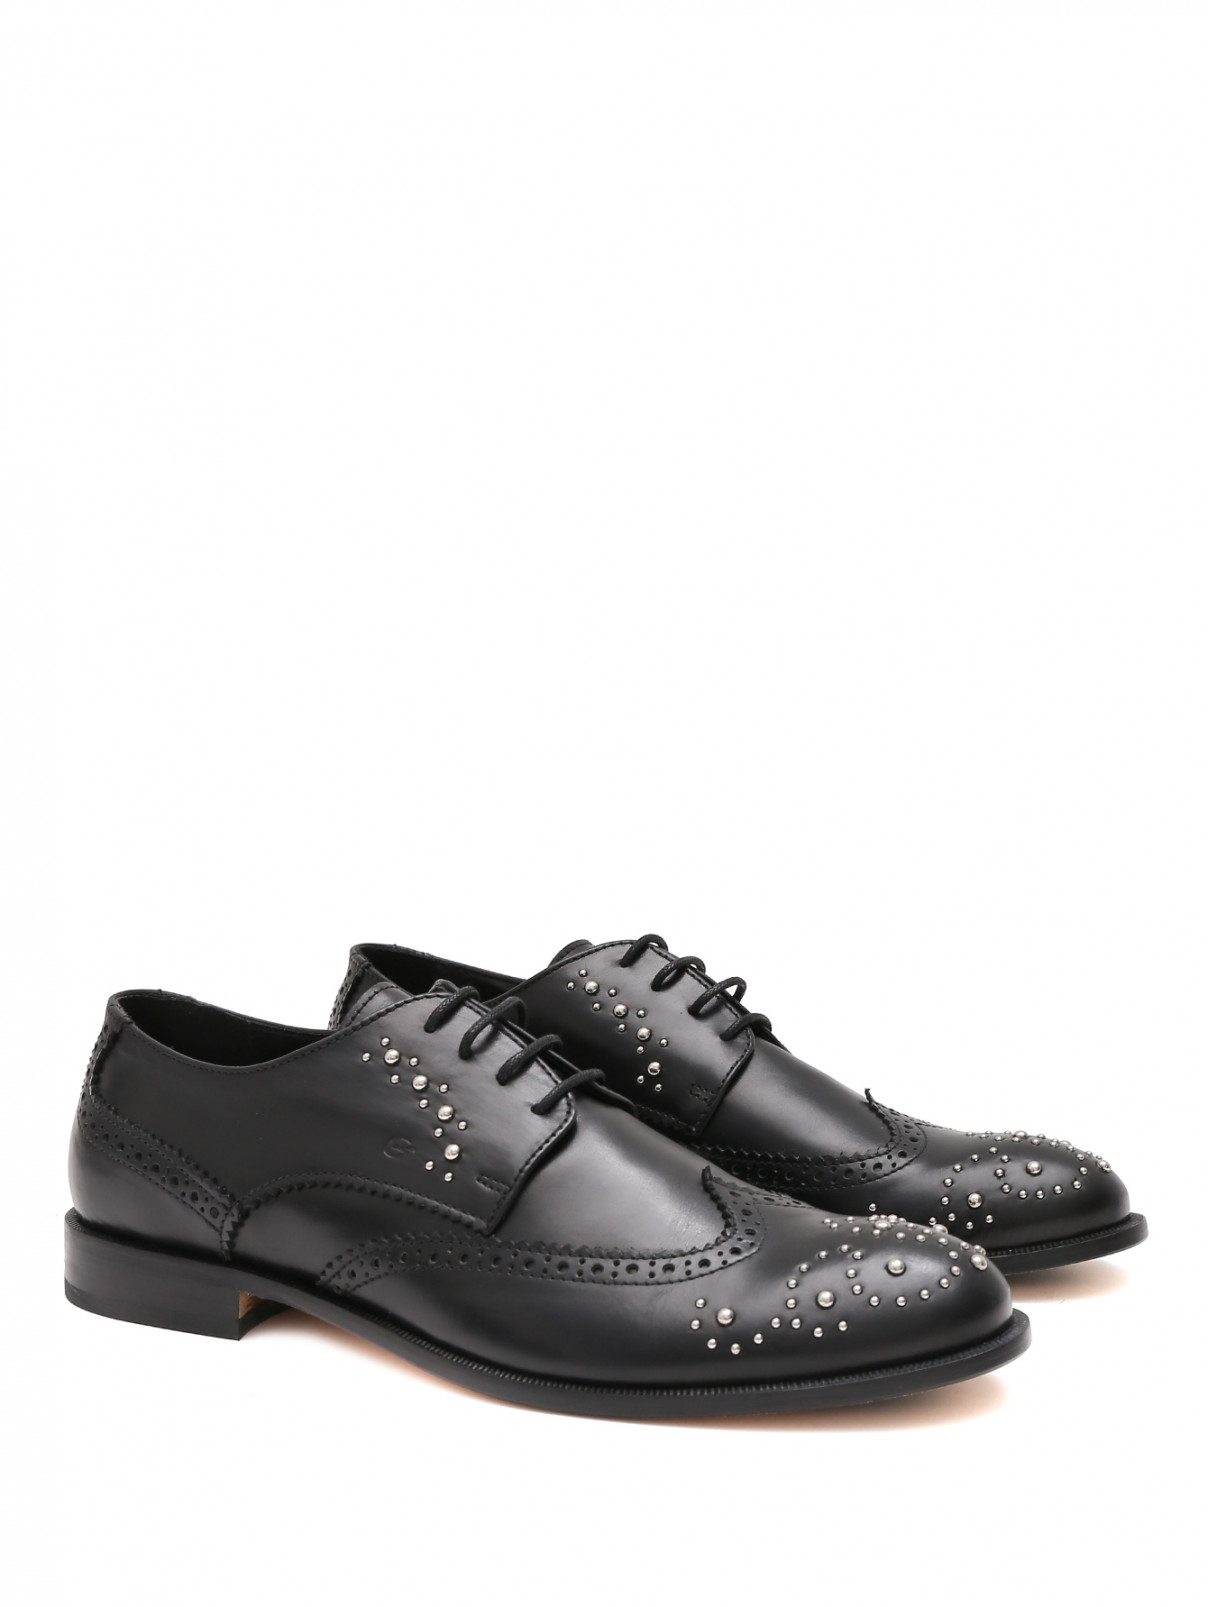 Туфли с металлическим декором Gallucci  –  Общий вид  – Цвет:  Черный